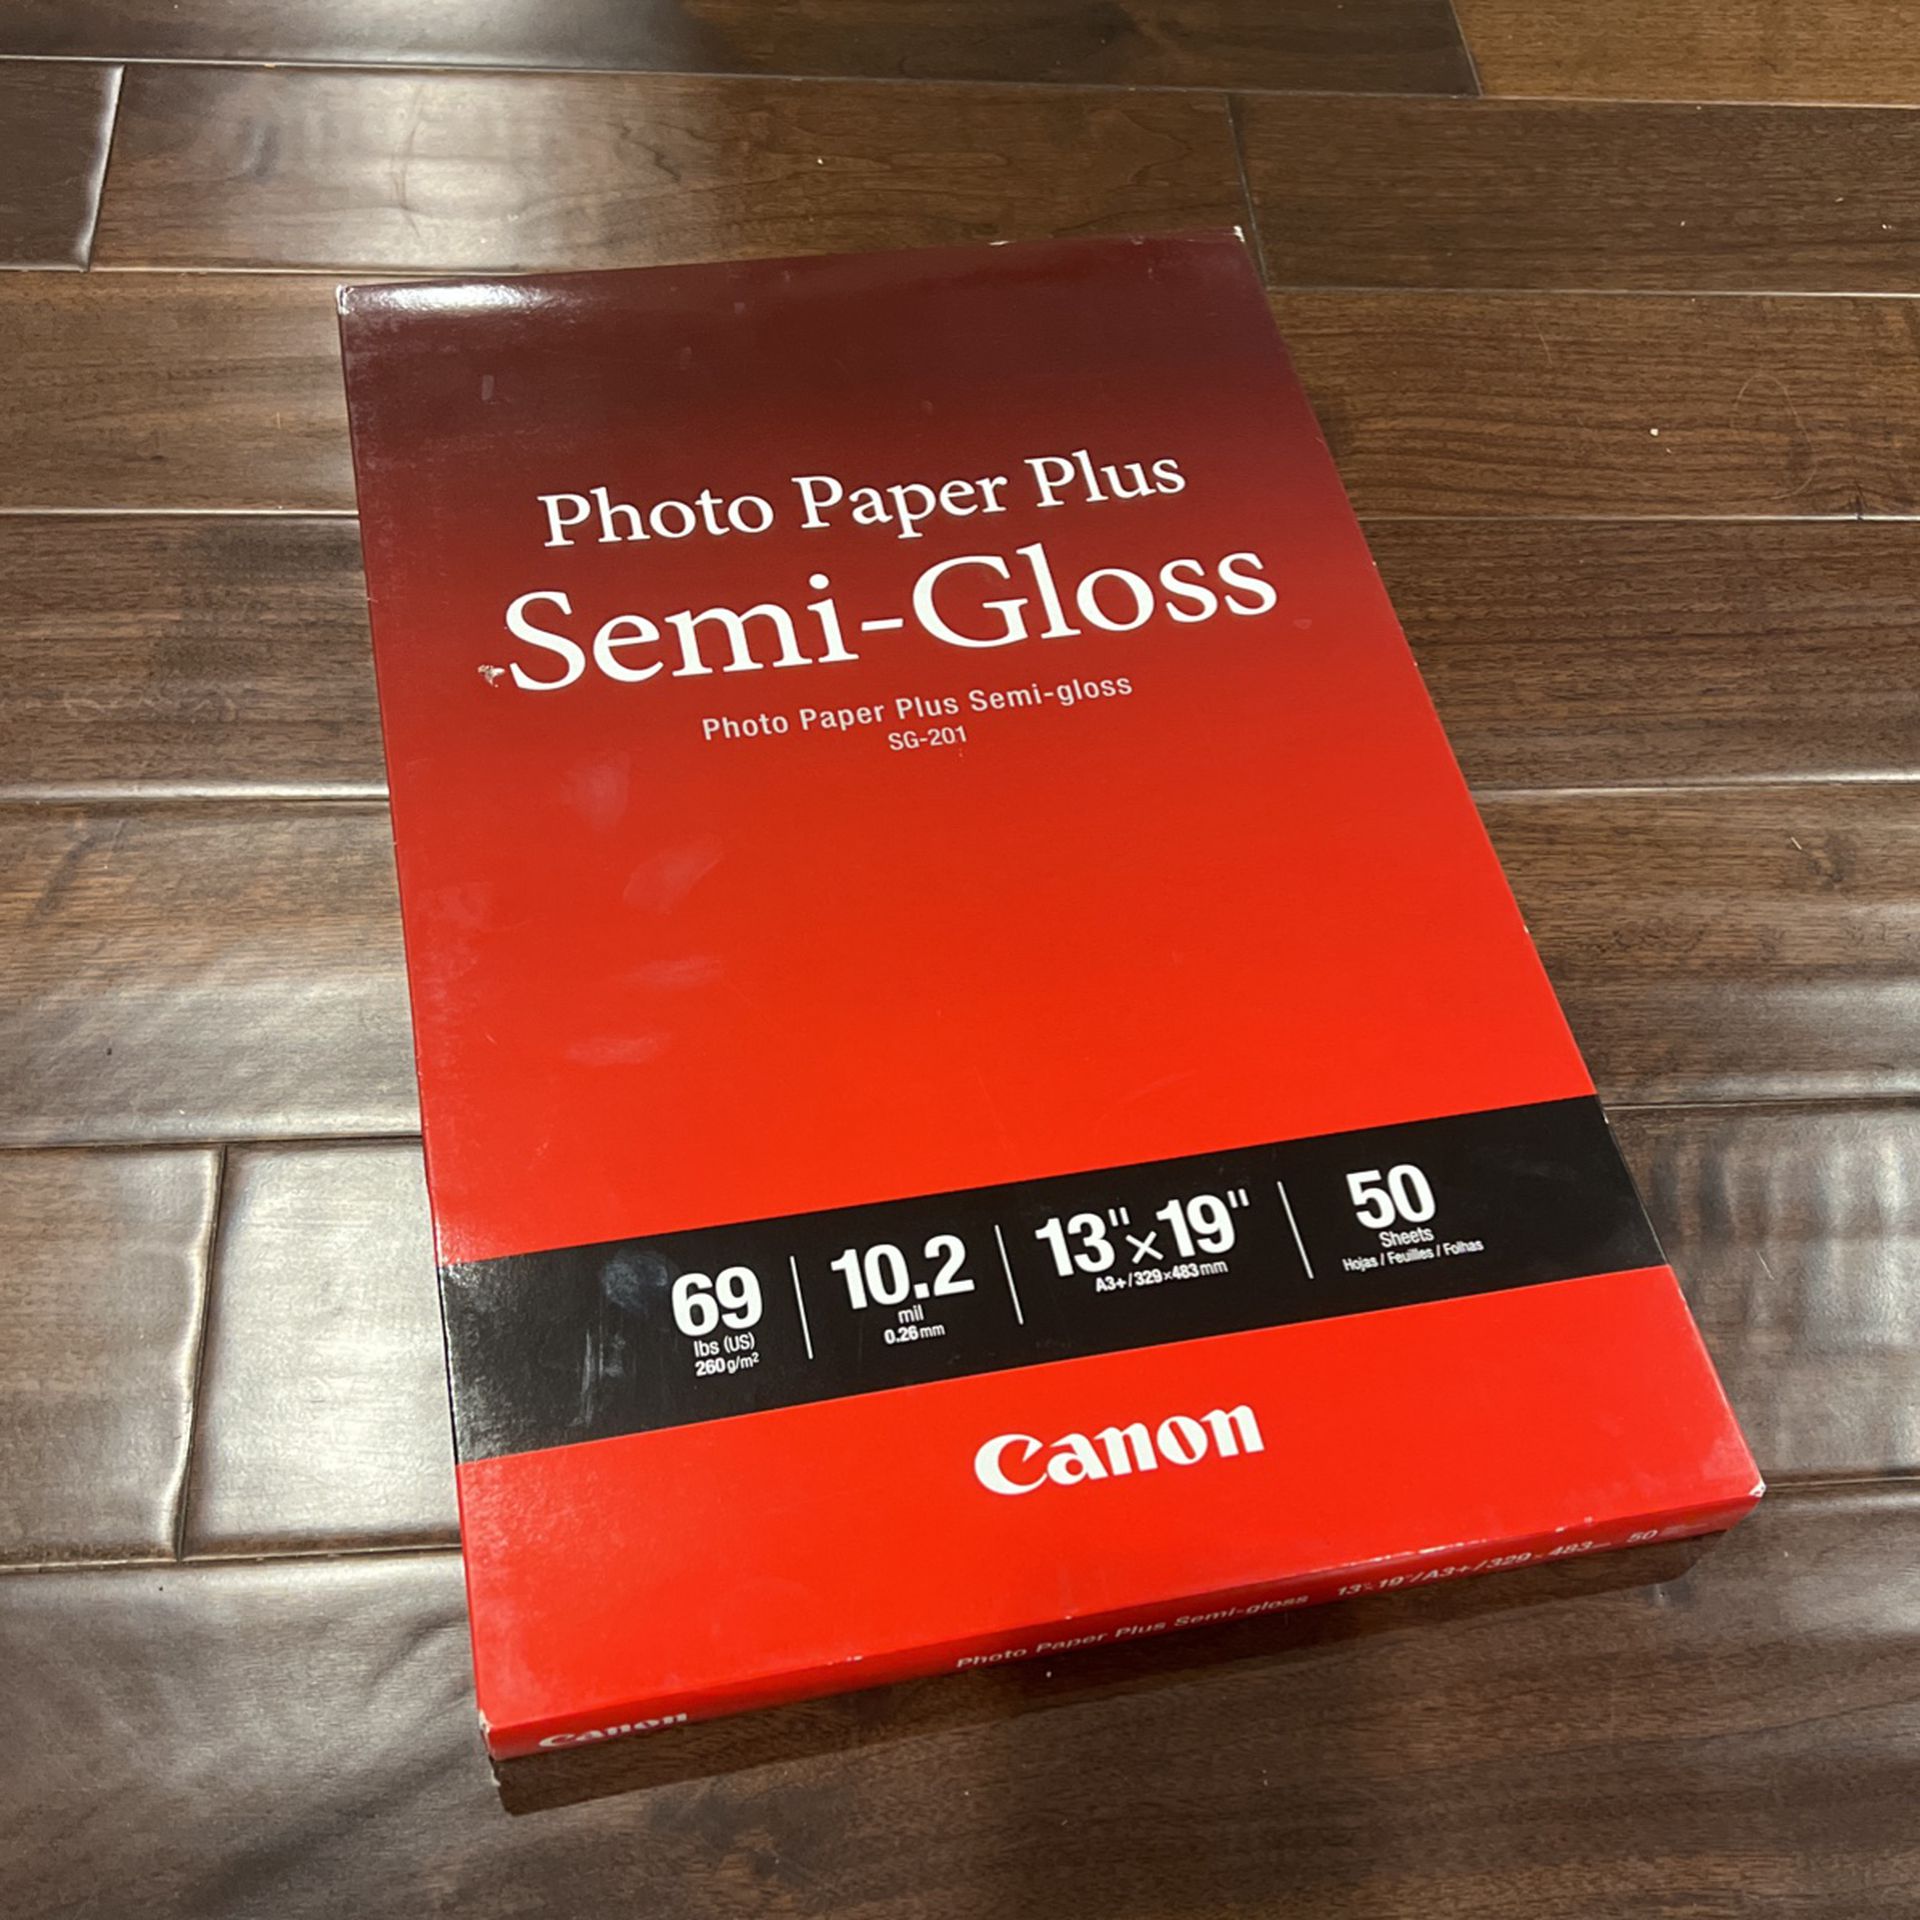 Canon Photo Paper Plus Semi-Gloss (13”-19”) SG-201